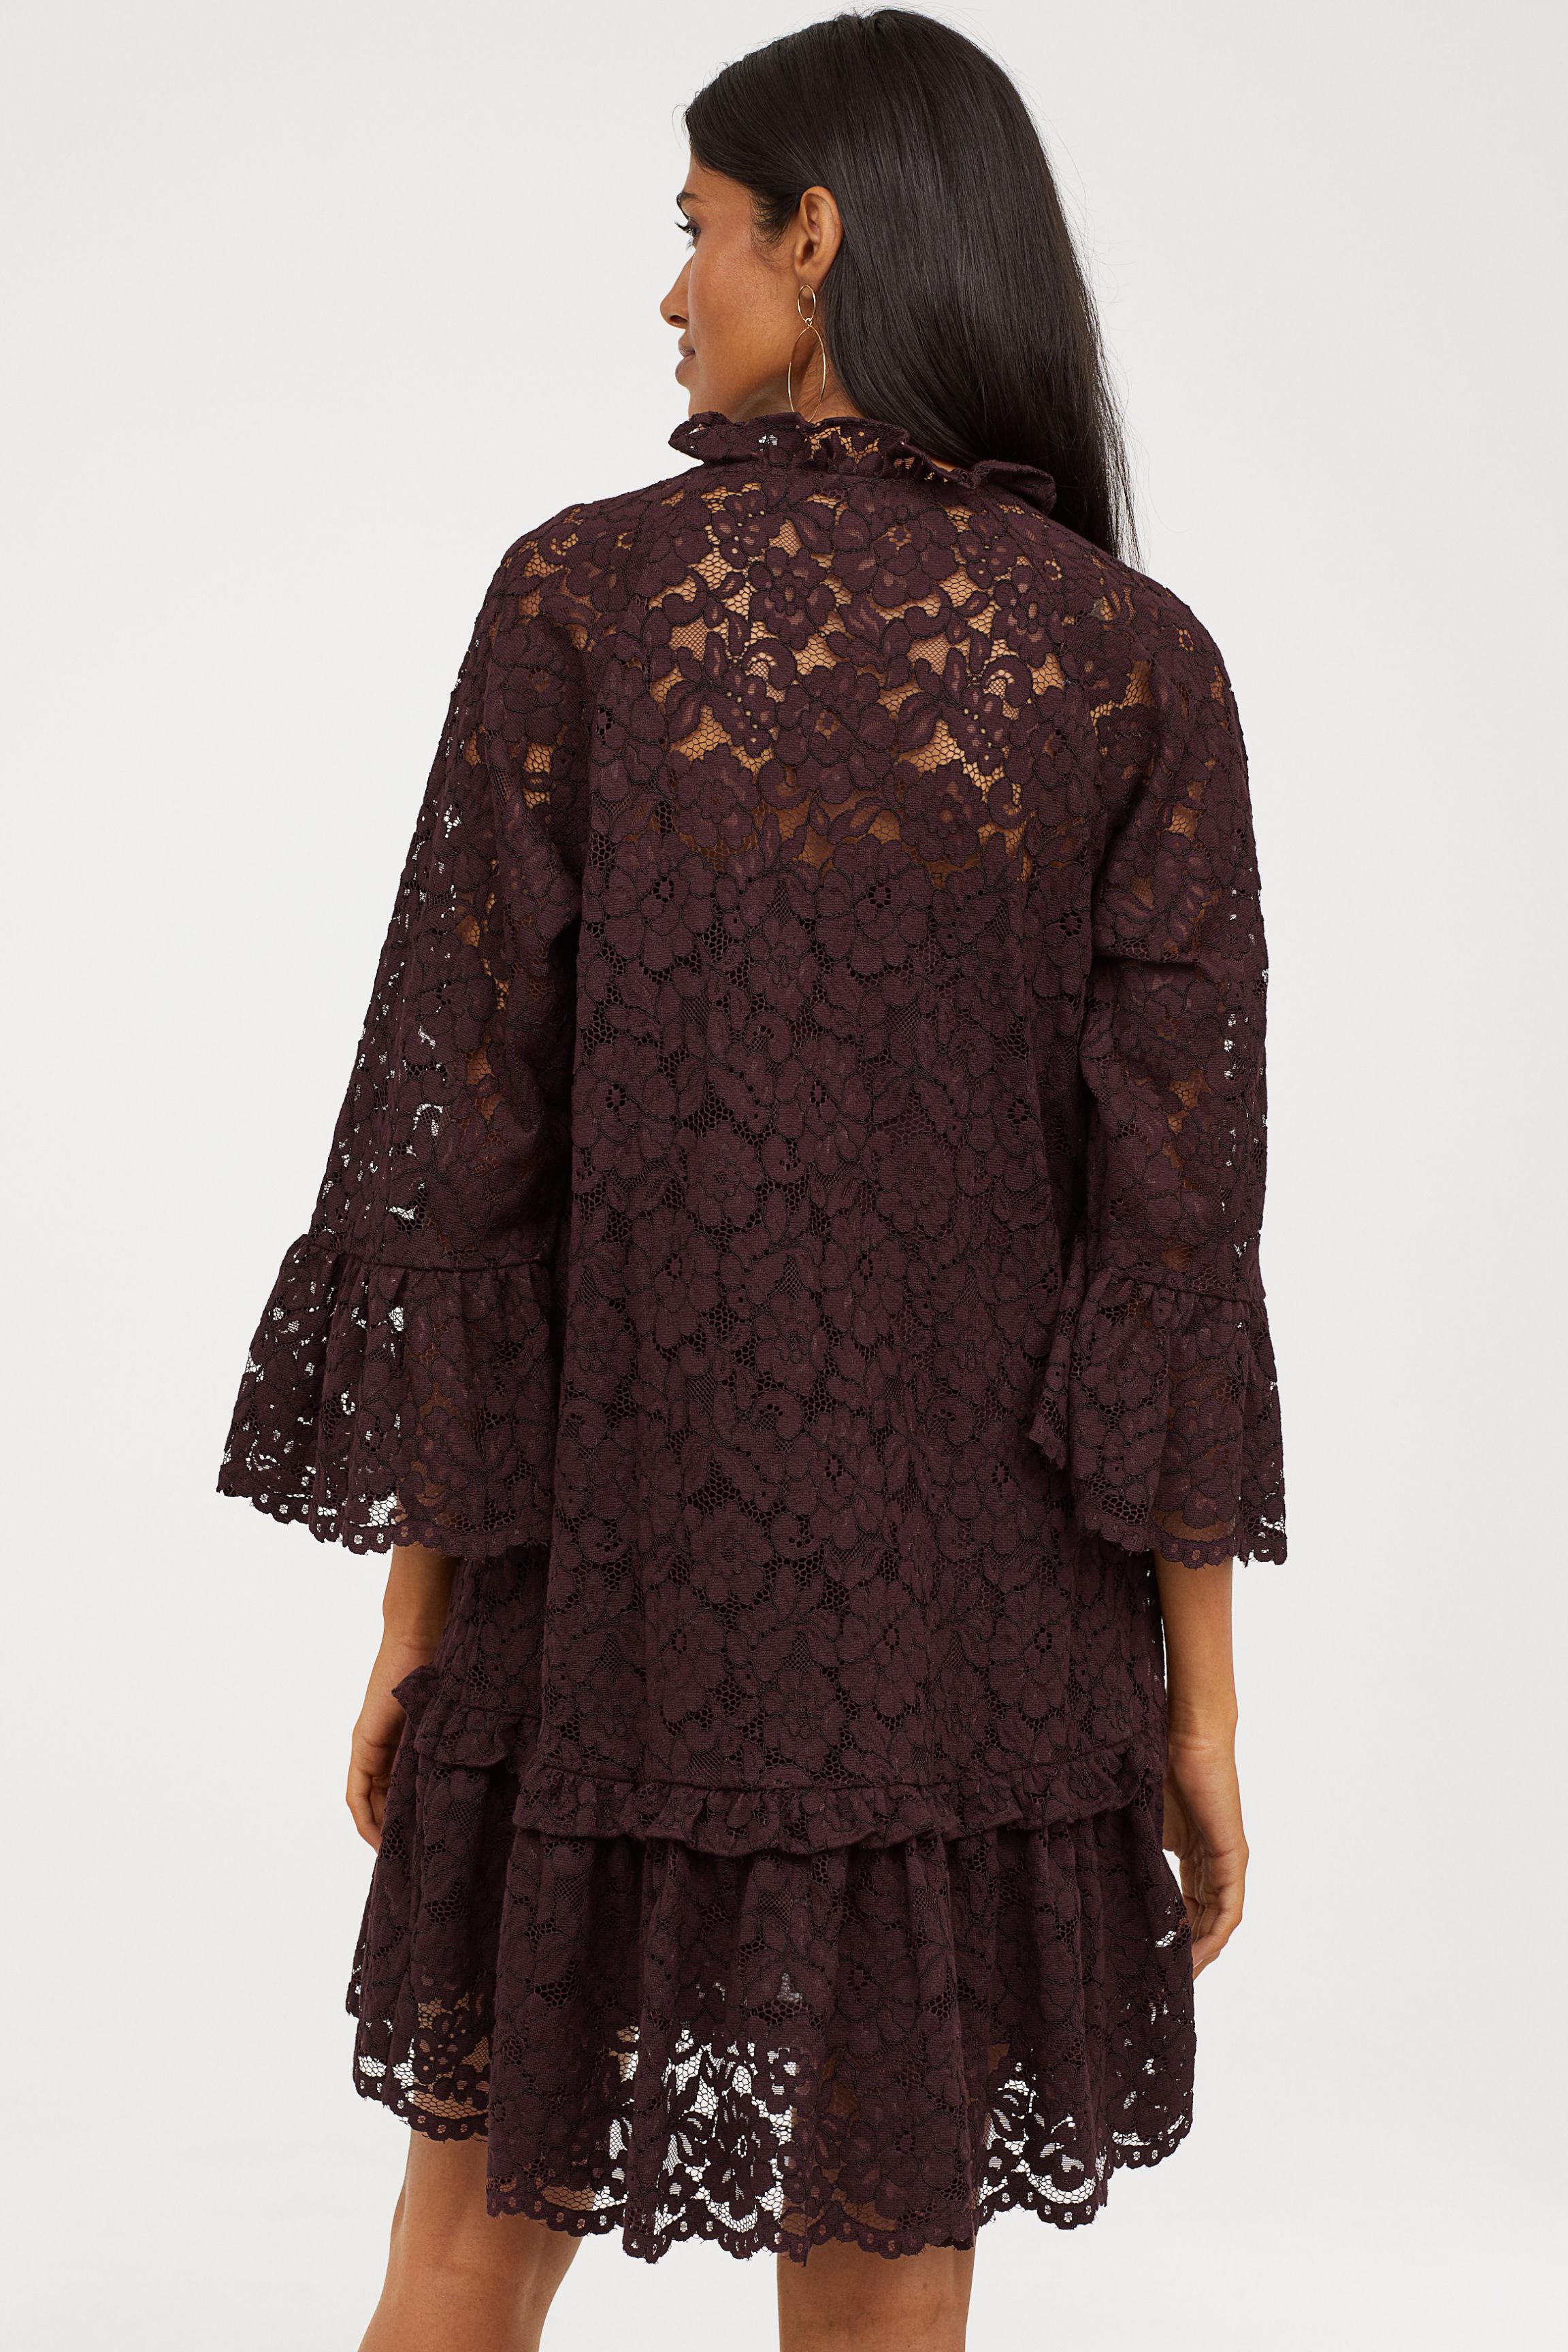 H&M Wide Lace Dress | Lyst